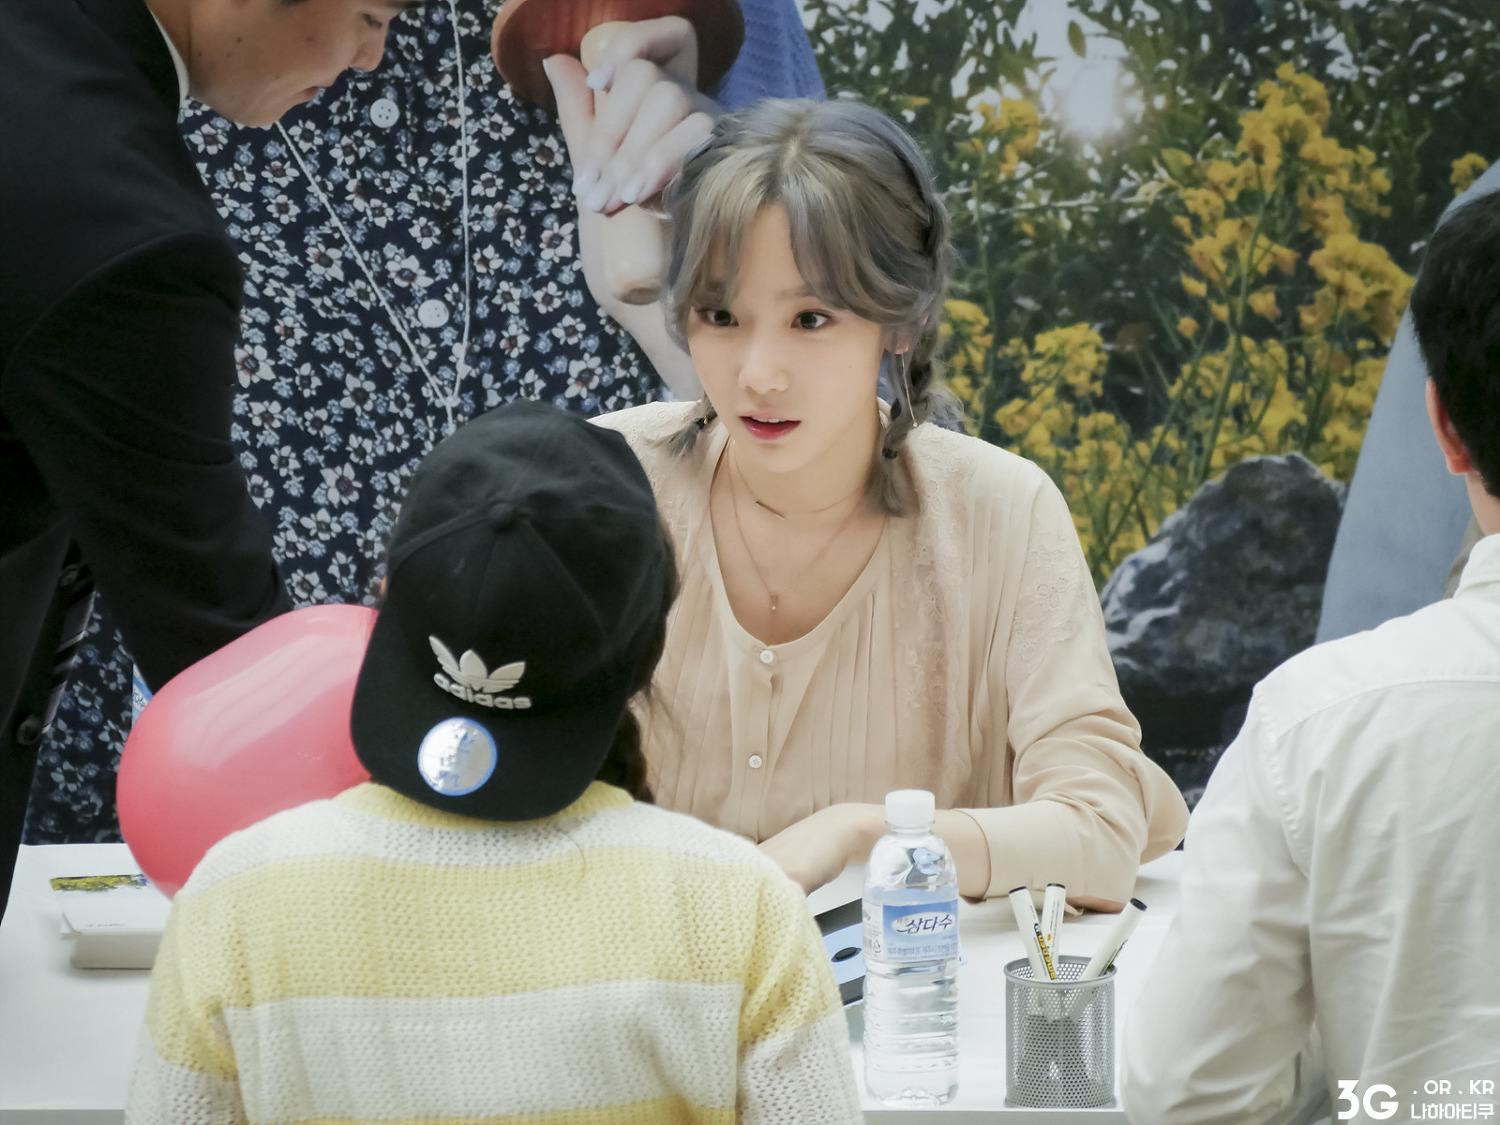 [PIC][23-09-2016]TaeYeon tham dự buổi Fansign cho thương hiệu nước uống "SAMDASOO" tại COEX Live Plaza vào tối nay - Page 8 212E934457E6AE33113CC6